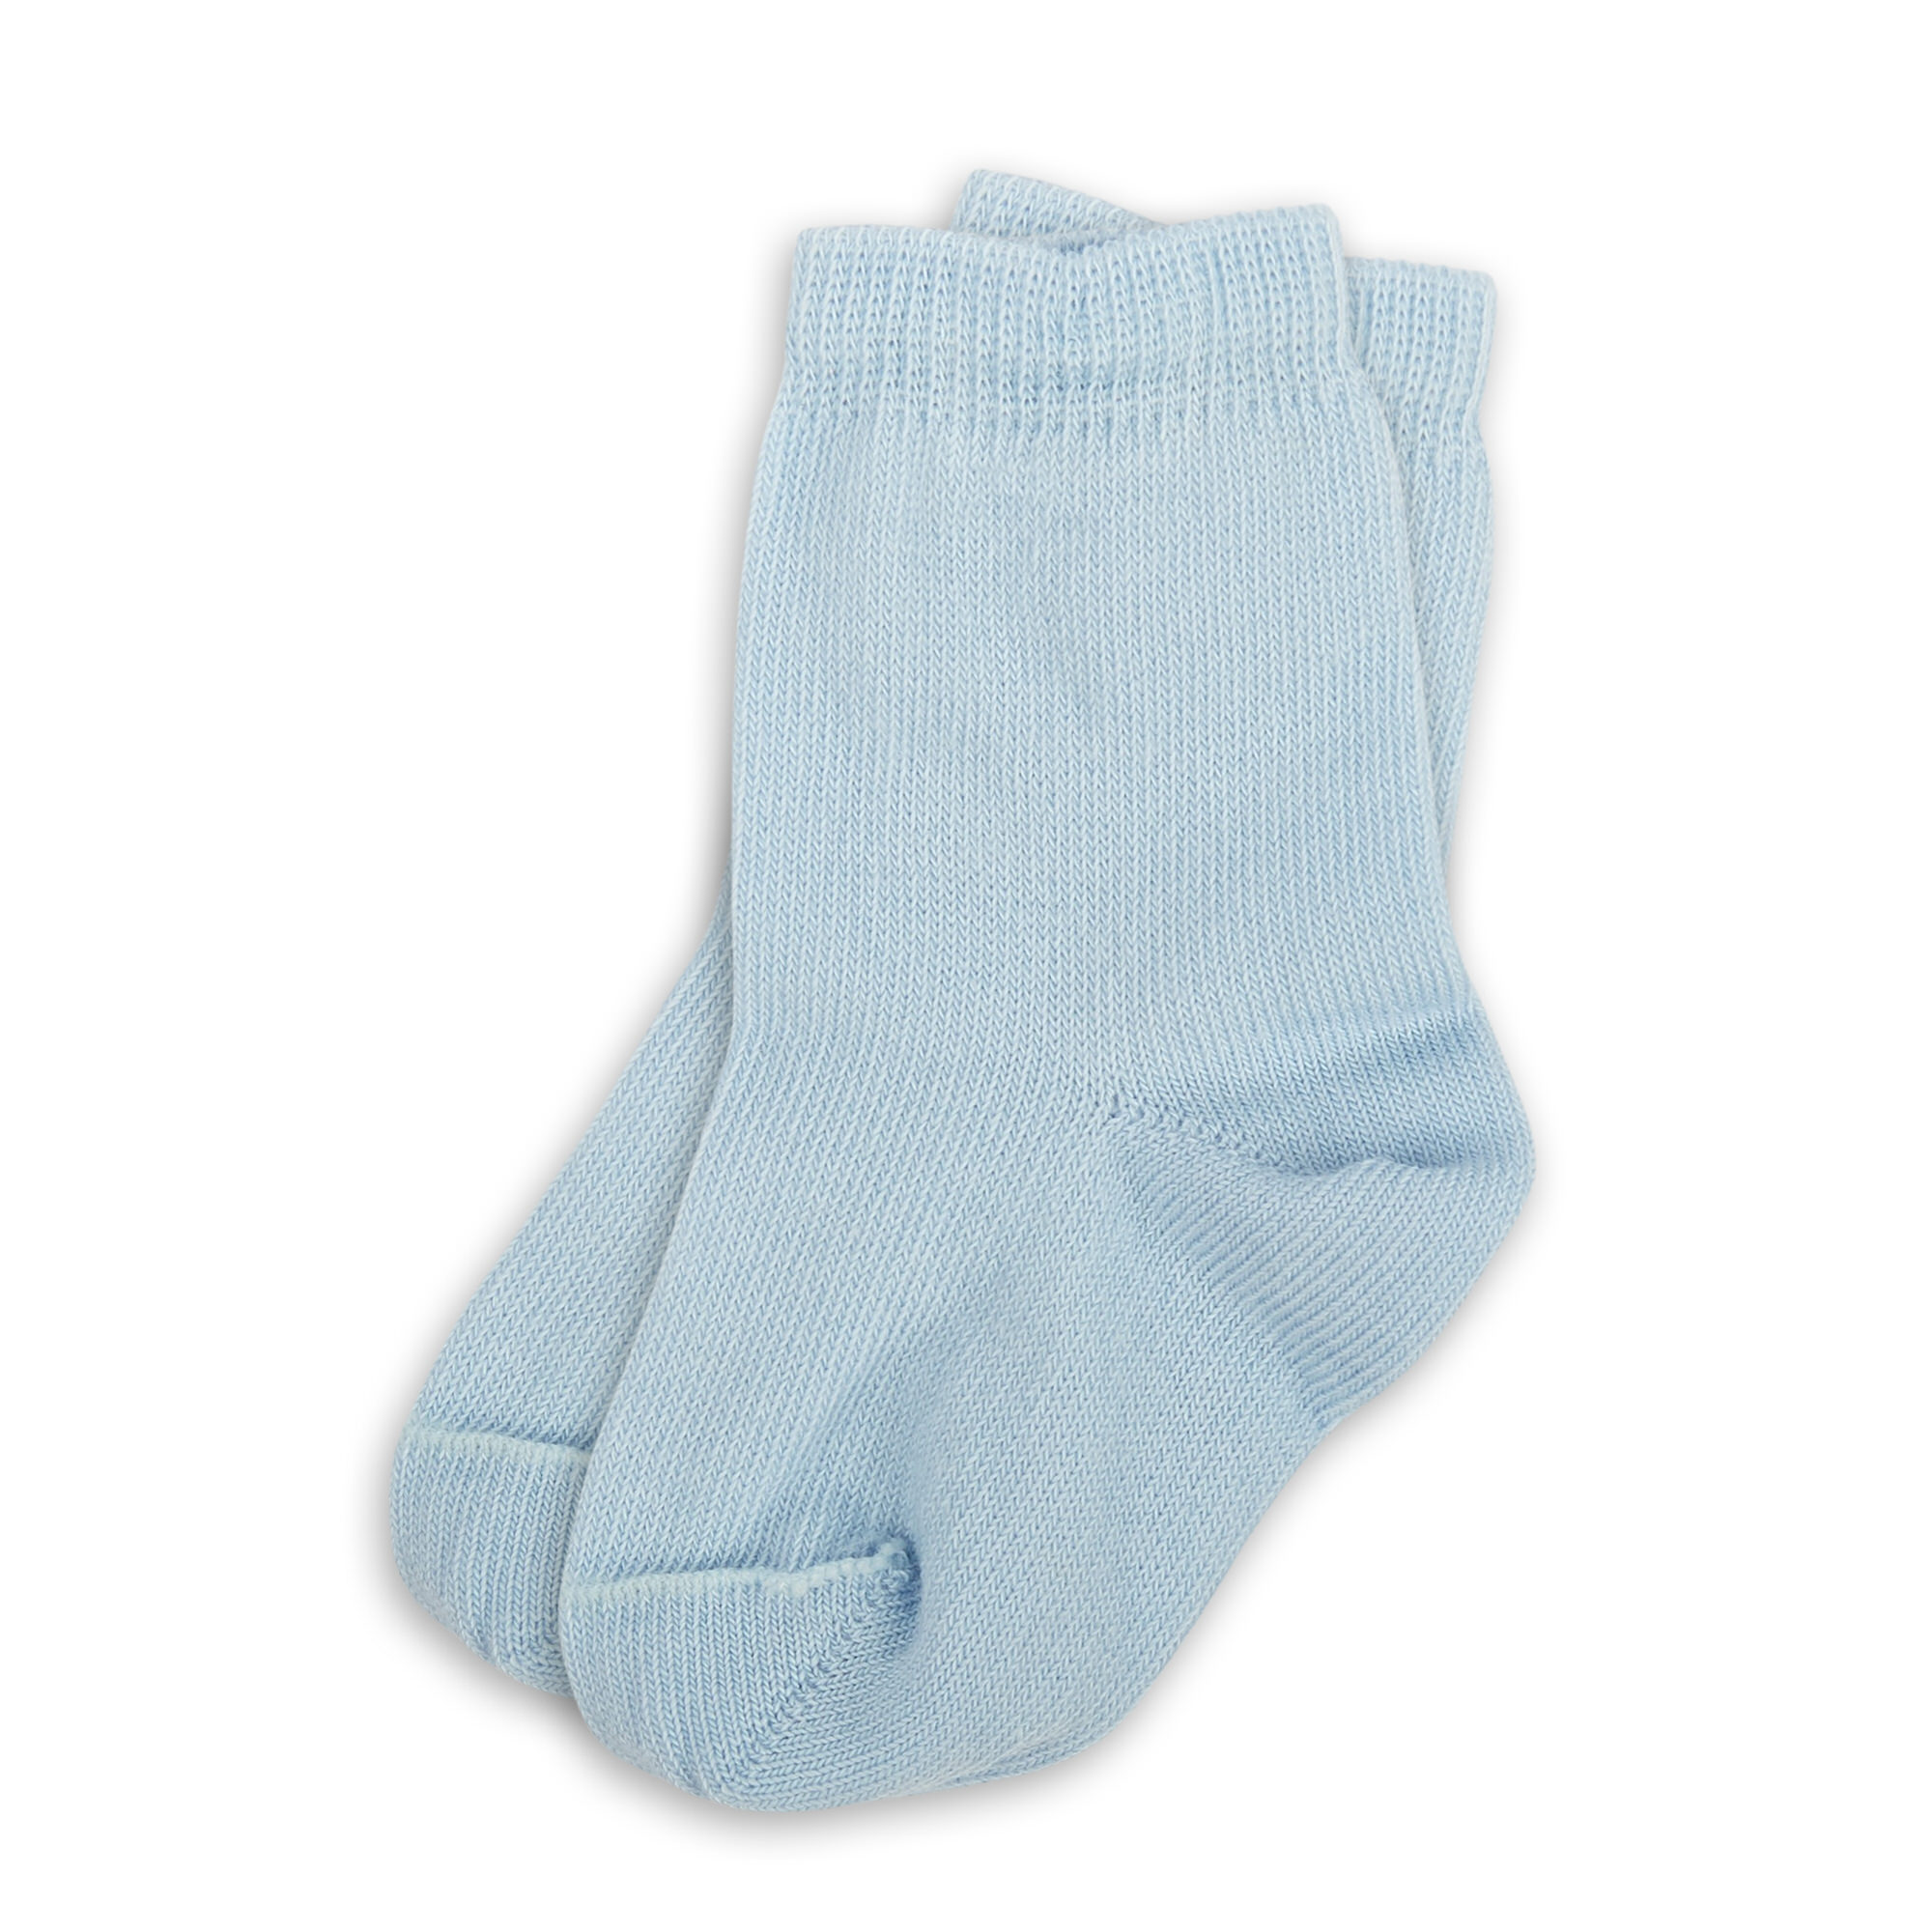 Baby socks light blue